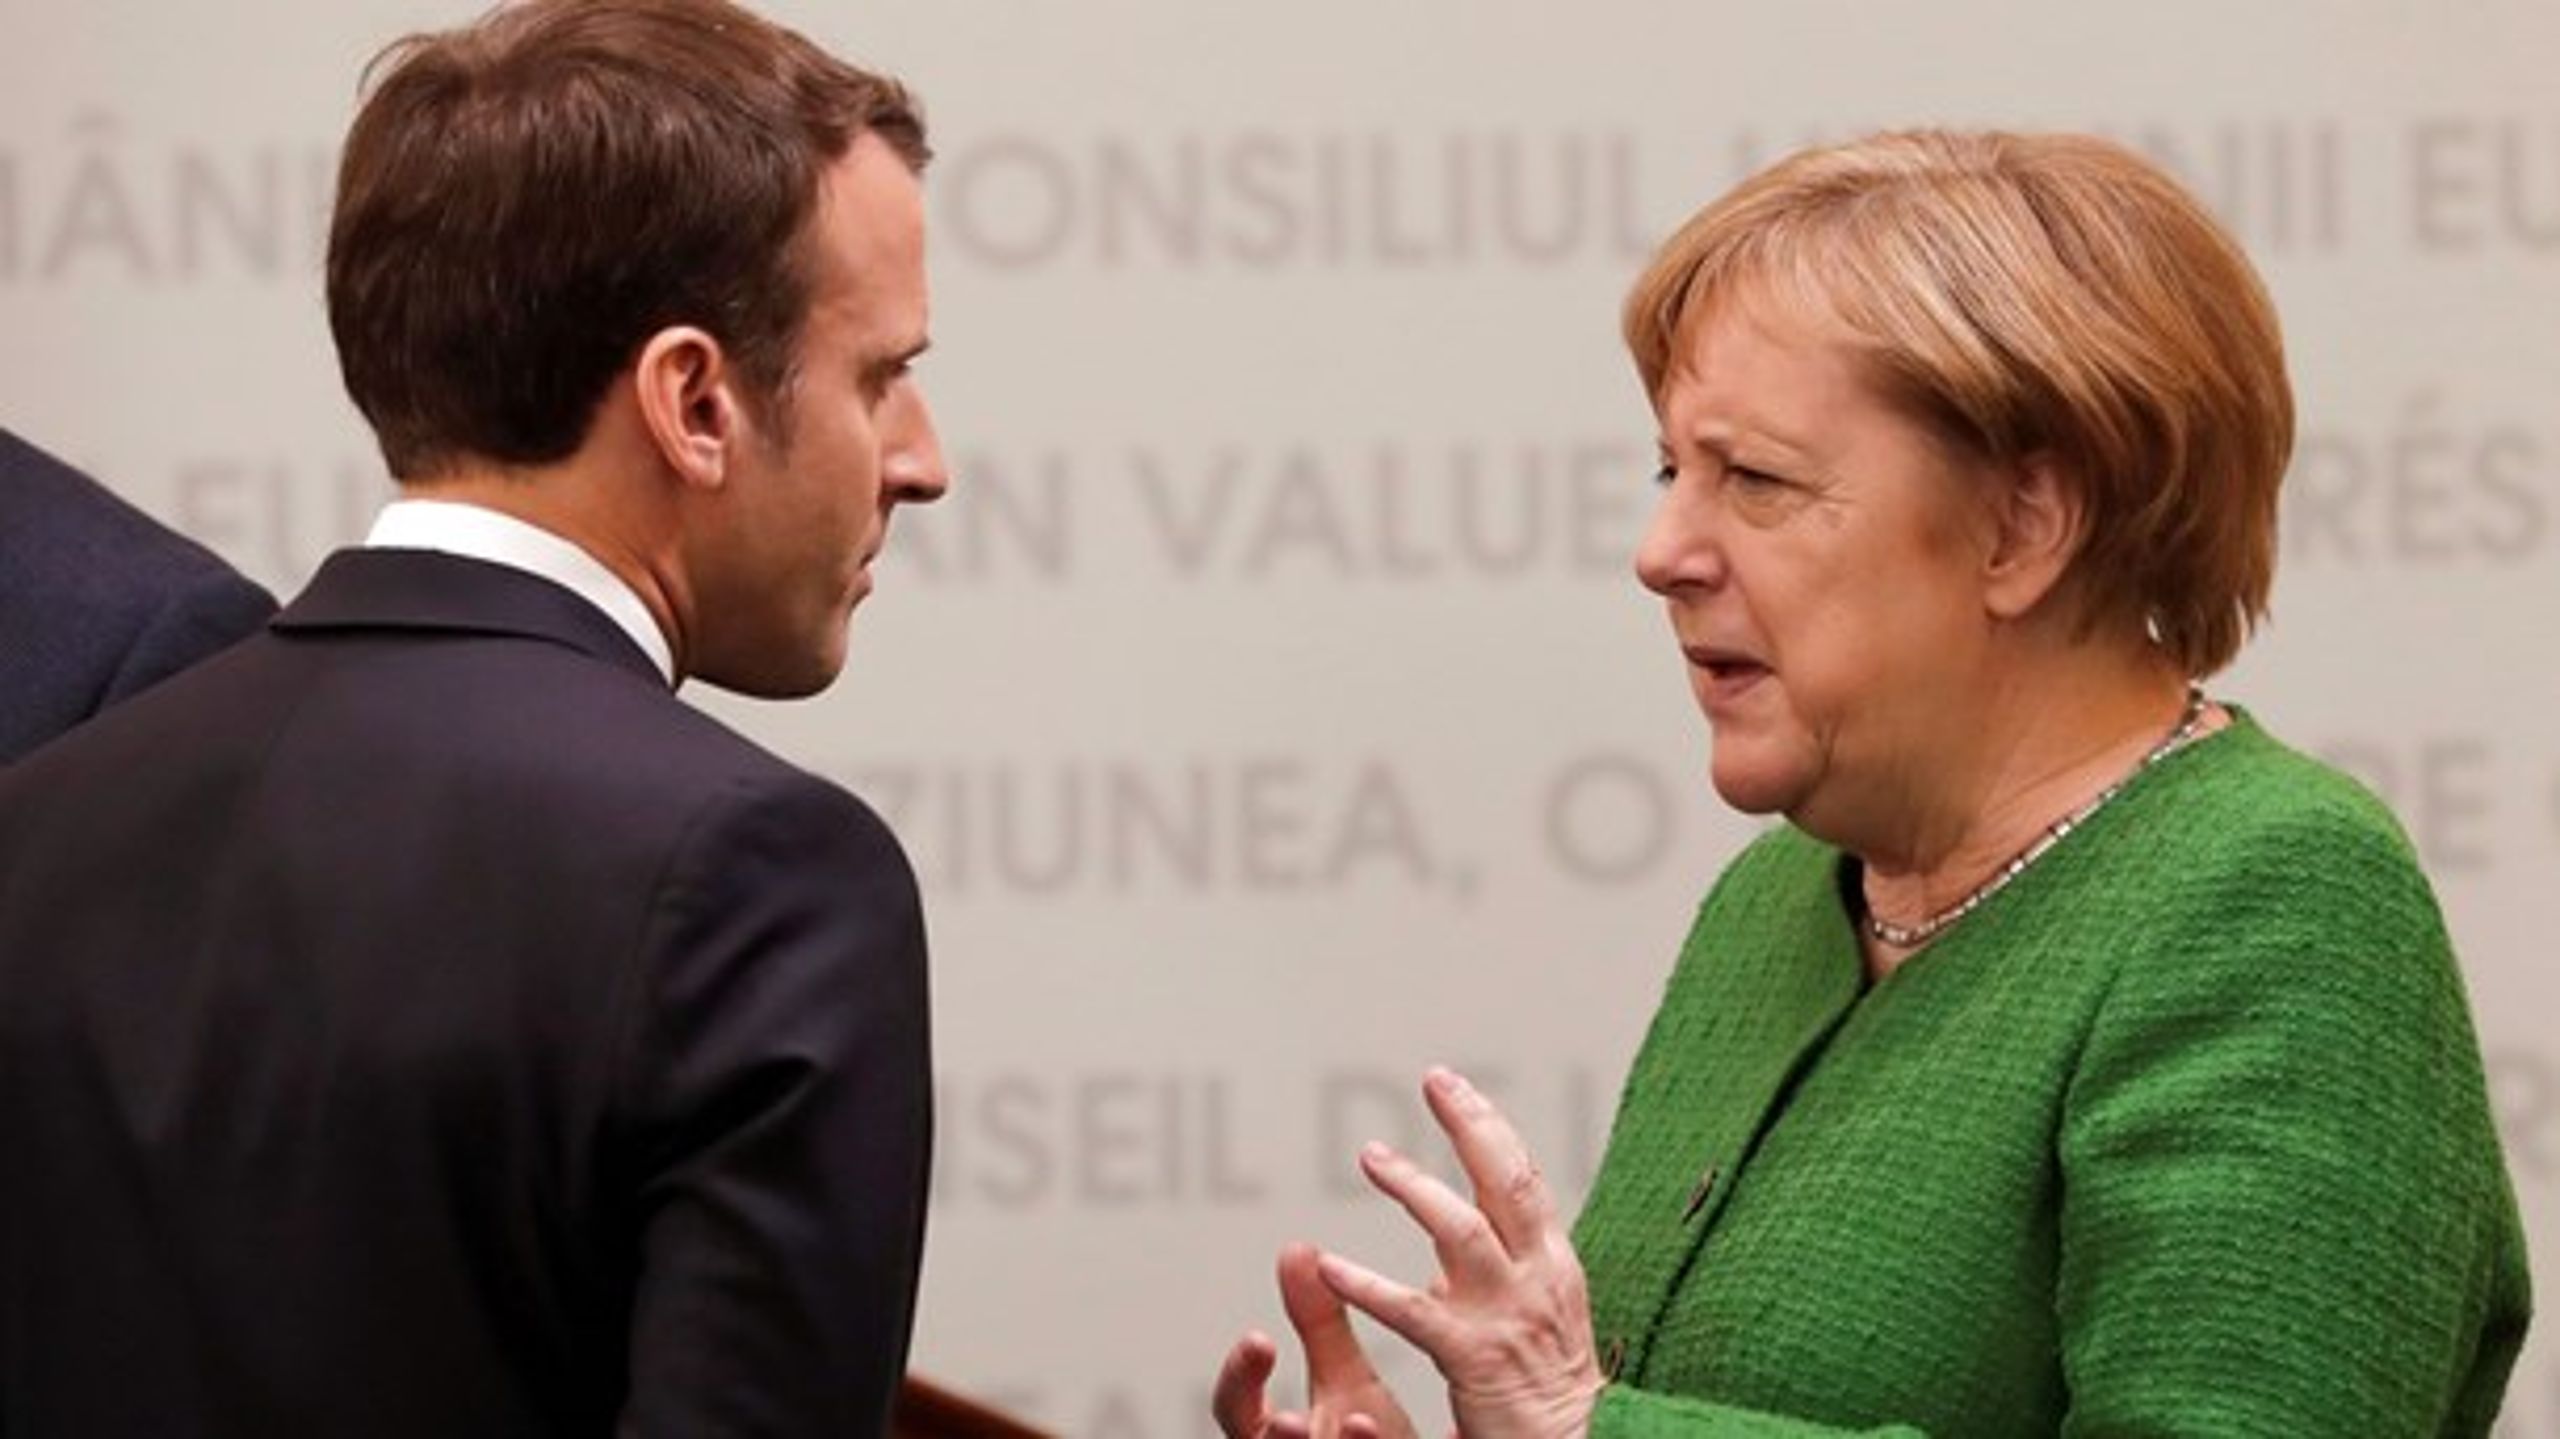 En magtkamp&nbsp;mellem den franske præsident, Emmanuel Macron, og den tyske kansler, Angela Merkel, om fordelingen af EU's topposter spiller en afgørende rolle i, hvem der har en chance for at løbe med jobbene.